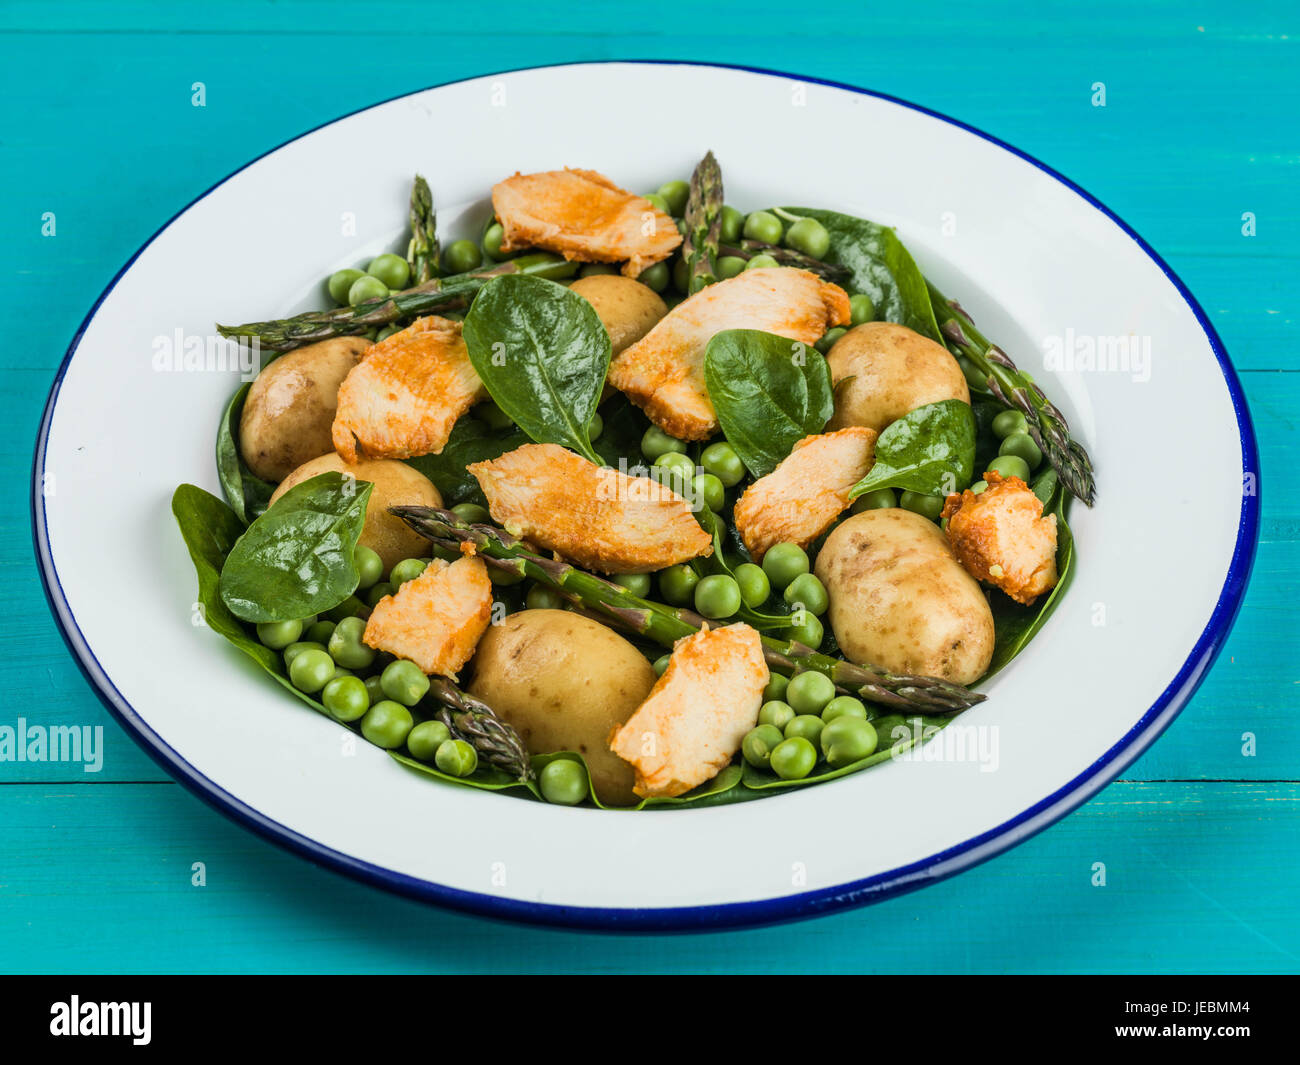 Hähnchen-Salat mit Spargel Erbsen Spinat und Kartoffeln auf blauem Grund Stockfoto